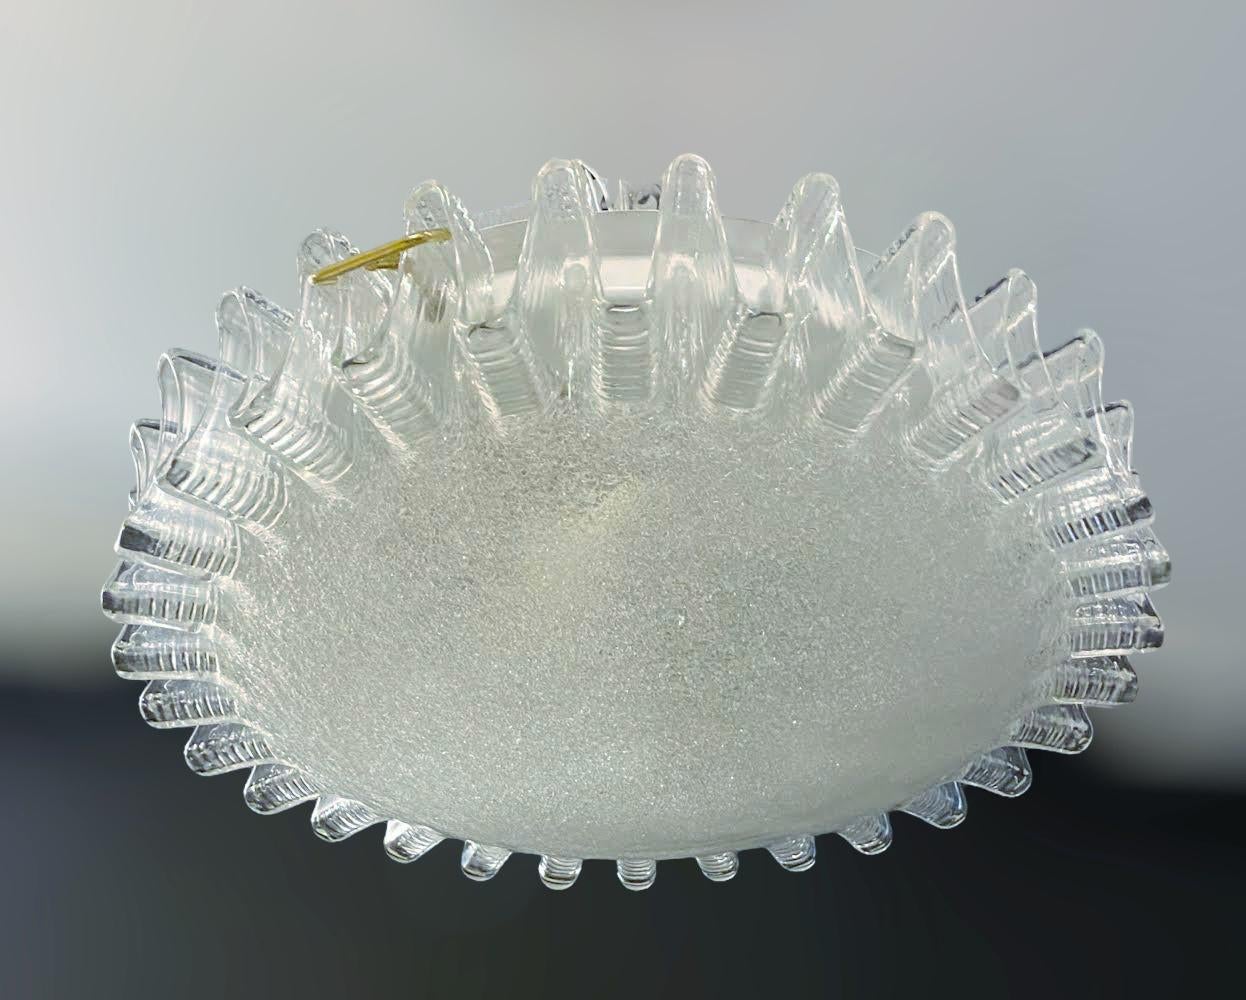 Vintage Italian flush mount eines runden Graniglia Murano Glasschirms mit geripptem Rand auf weißem Metallrahmen / Made in Italy, circa 1960er Jahre
Maße: Durchmesser 16 Zoll, Höhe 4 Zoll
2 Leuchten / Typ E26 oder E27 / je max. 60W
1 verfügbar auf